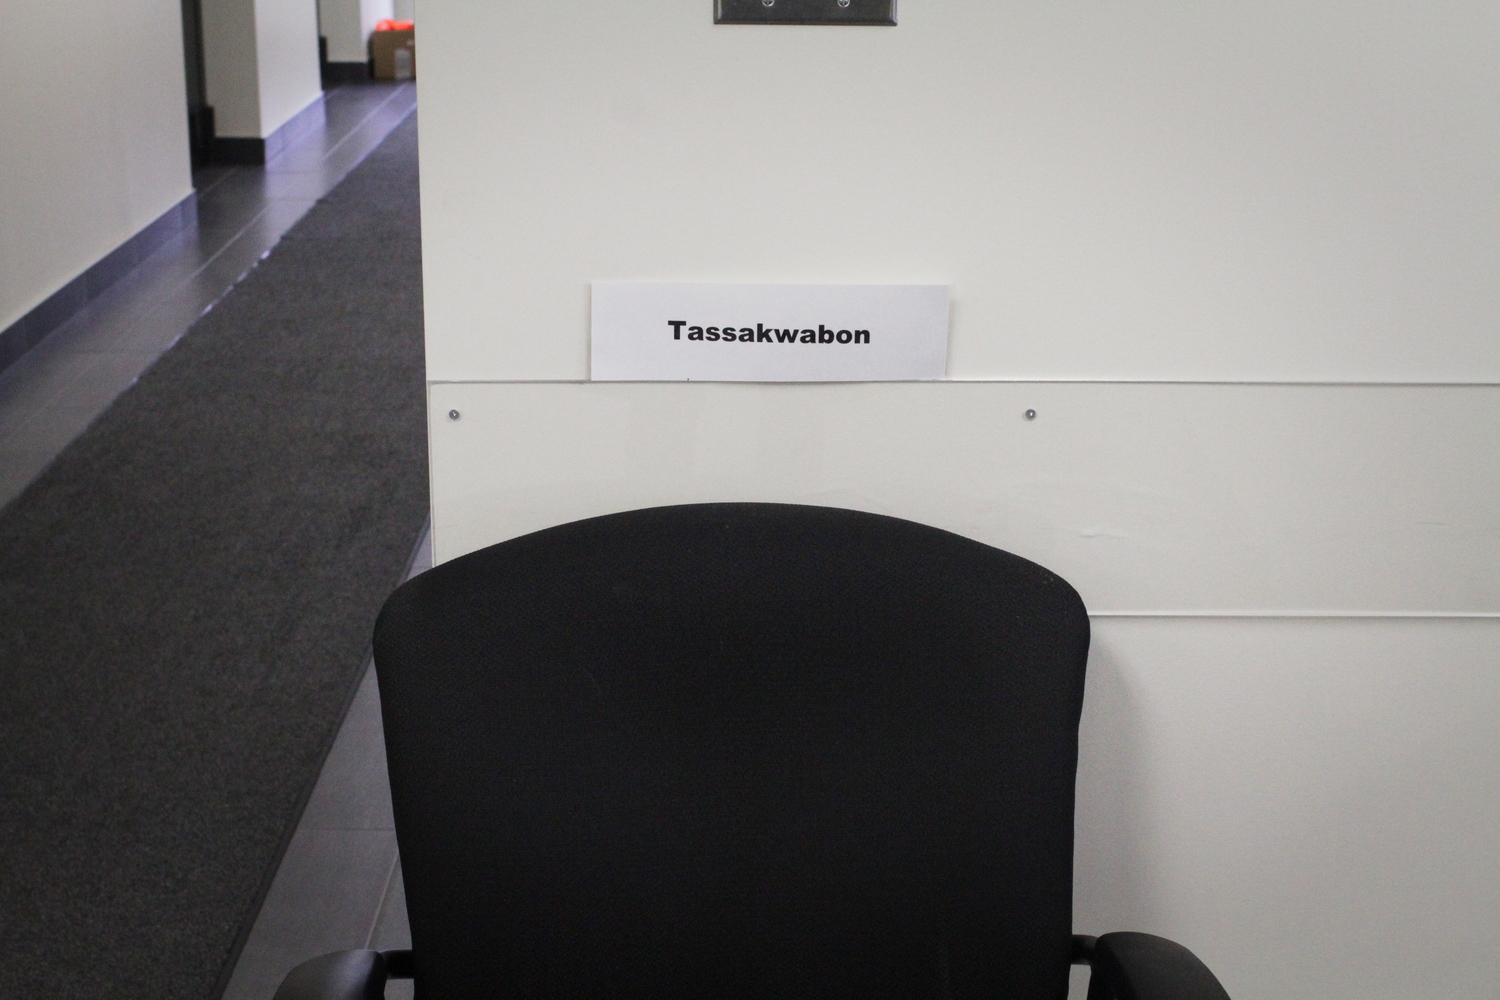 Dans le hall d’entrée, ces objets ont leurs traductions en langue abénakise. Une chaise se dit « tassakwabon » (tassakouabonne).